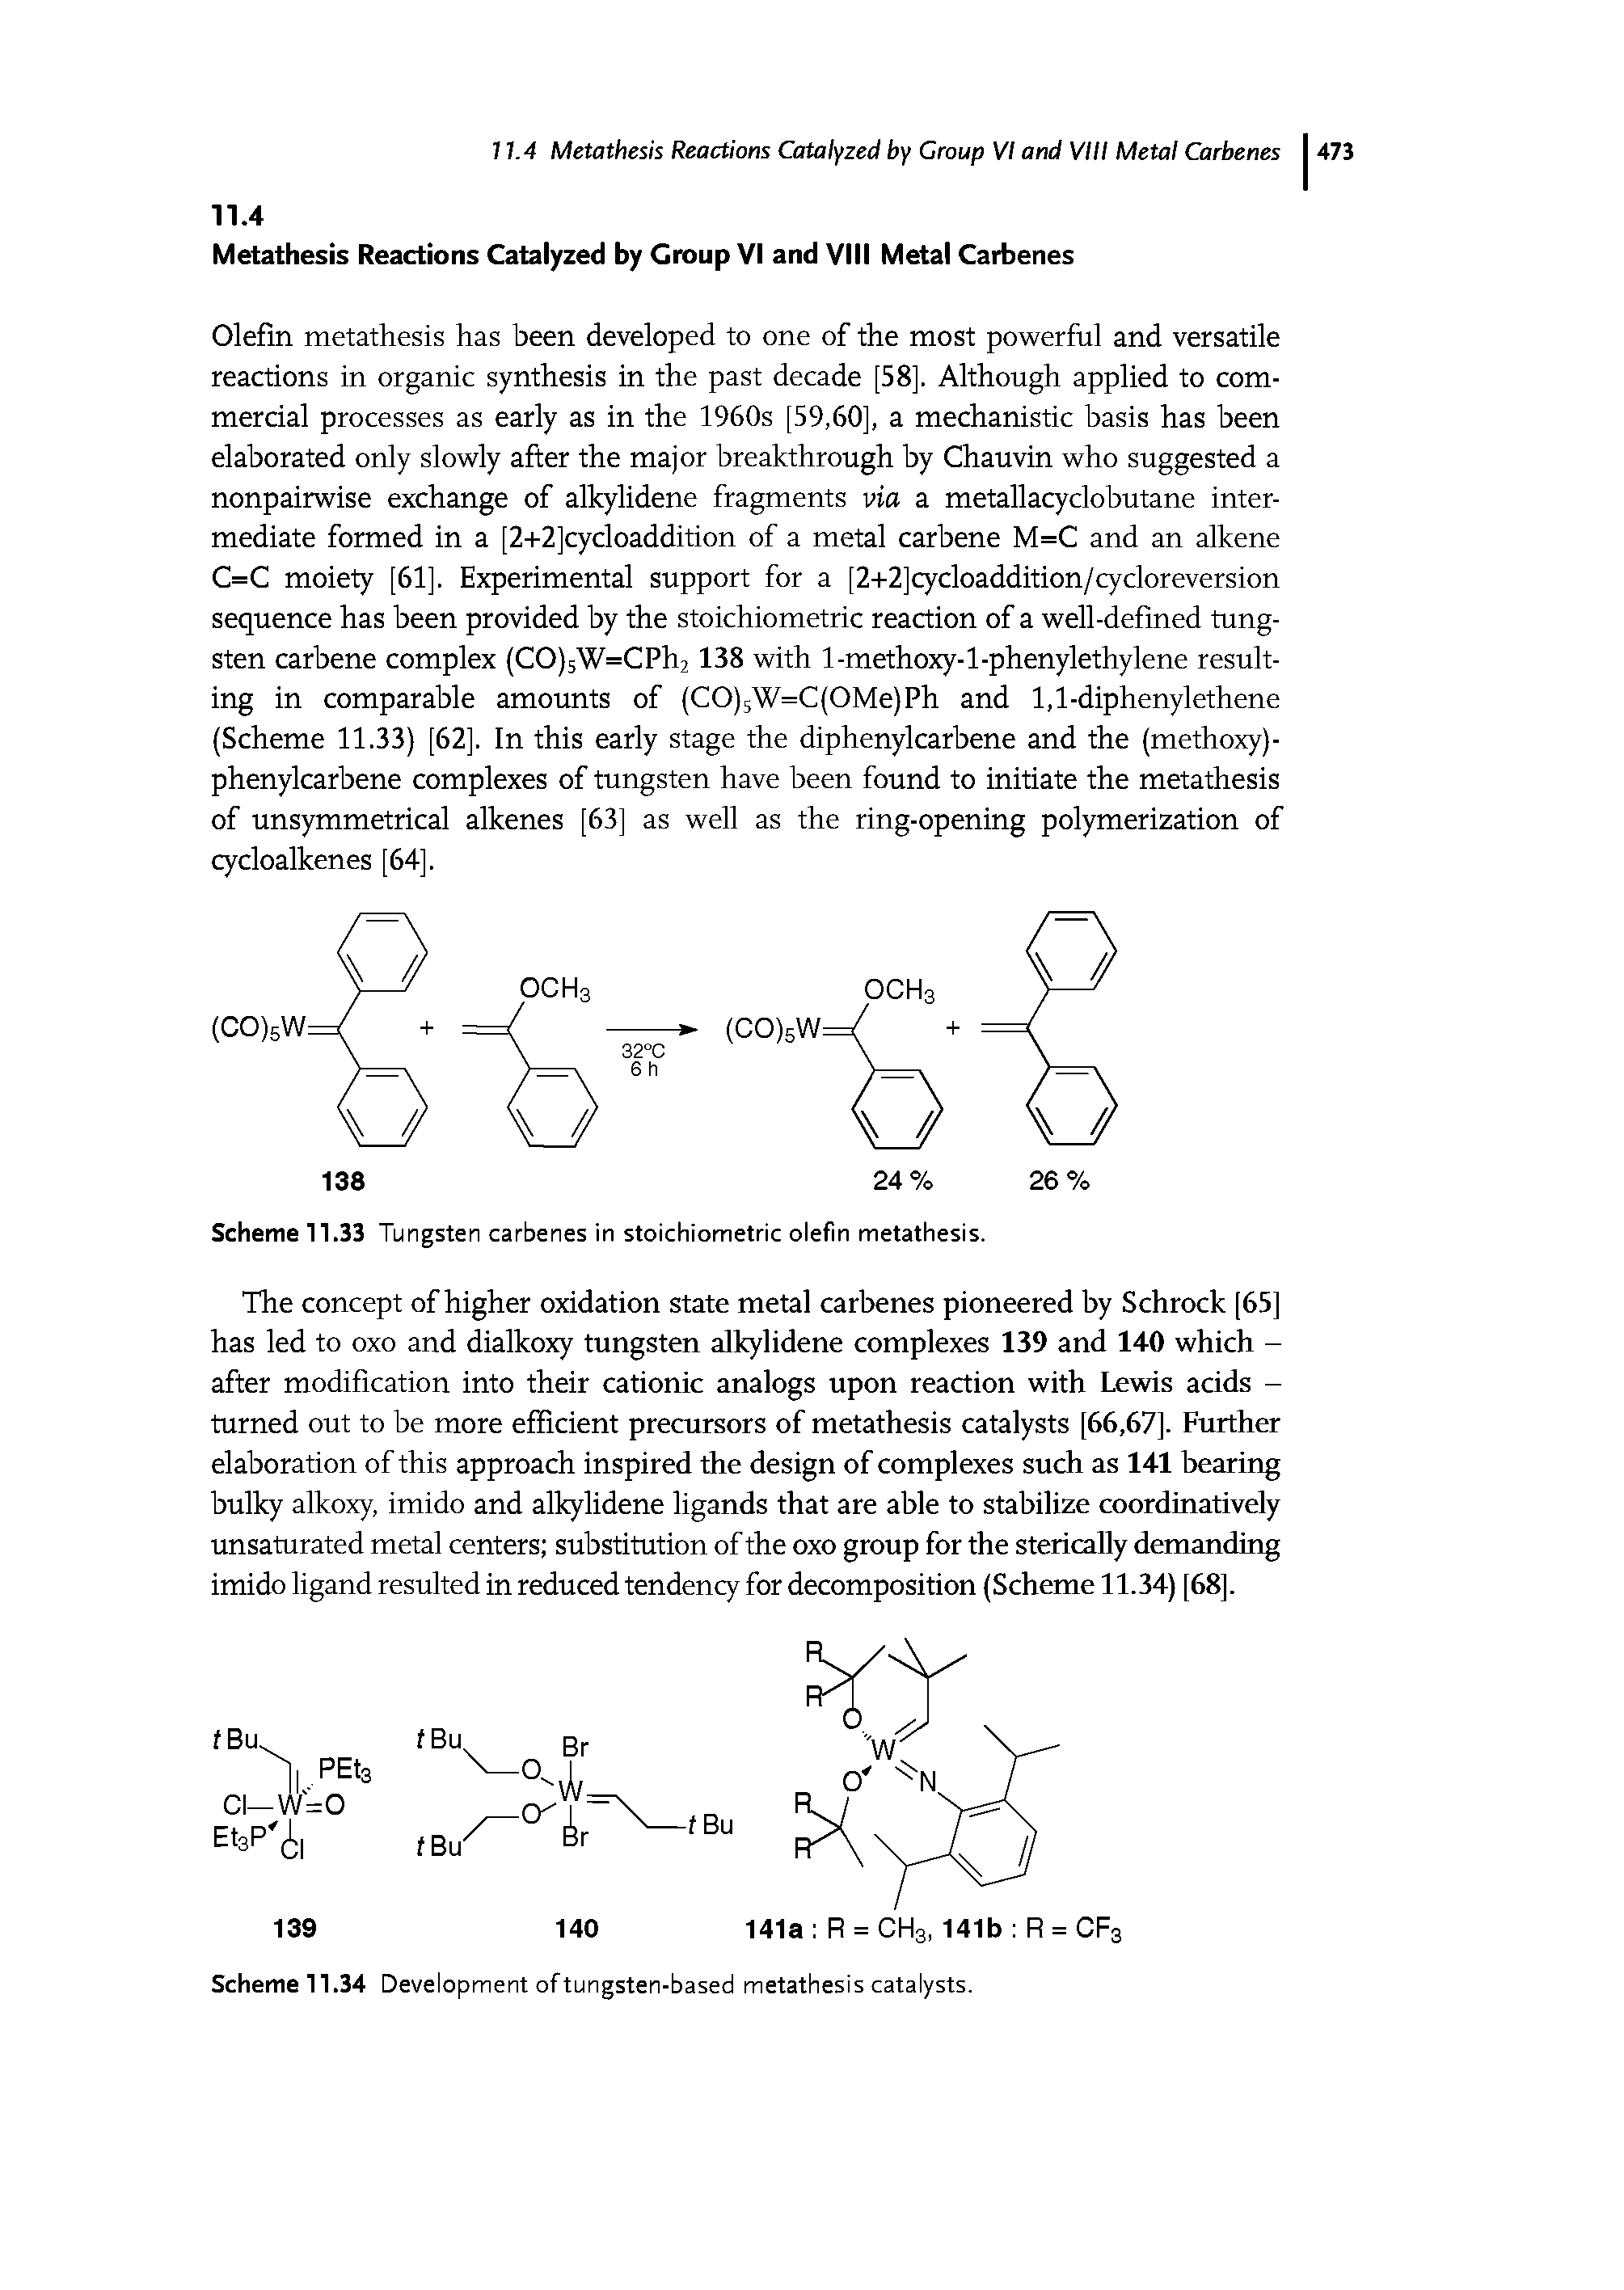 Scheme 11.34 Development of tungsten-based metathesis catalysts.